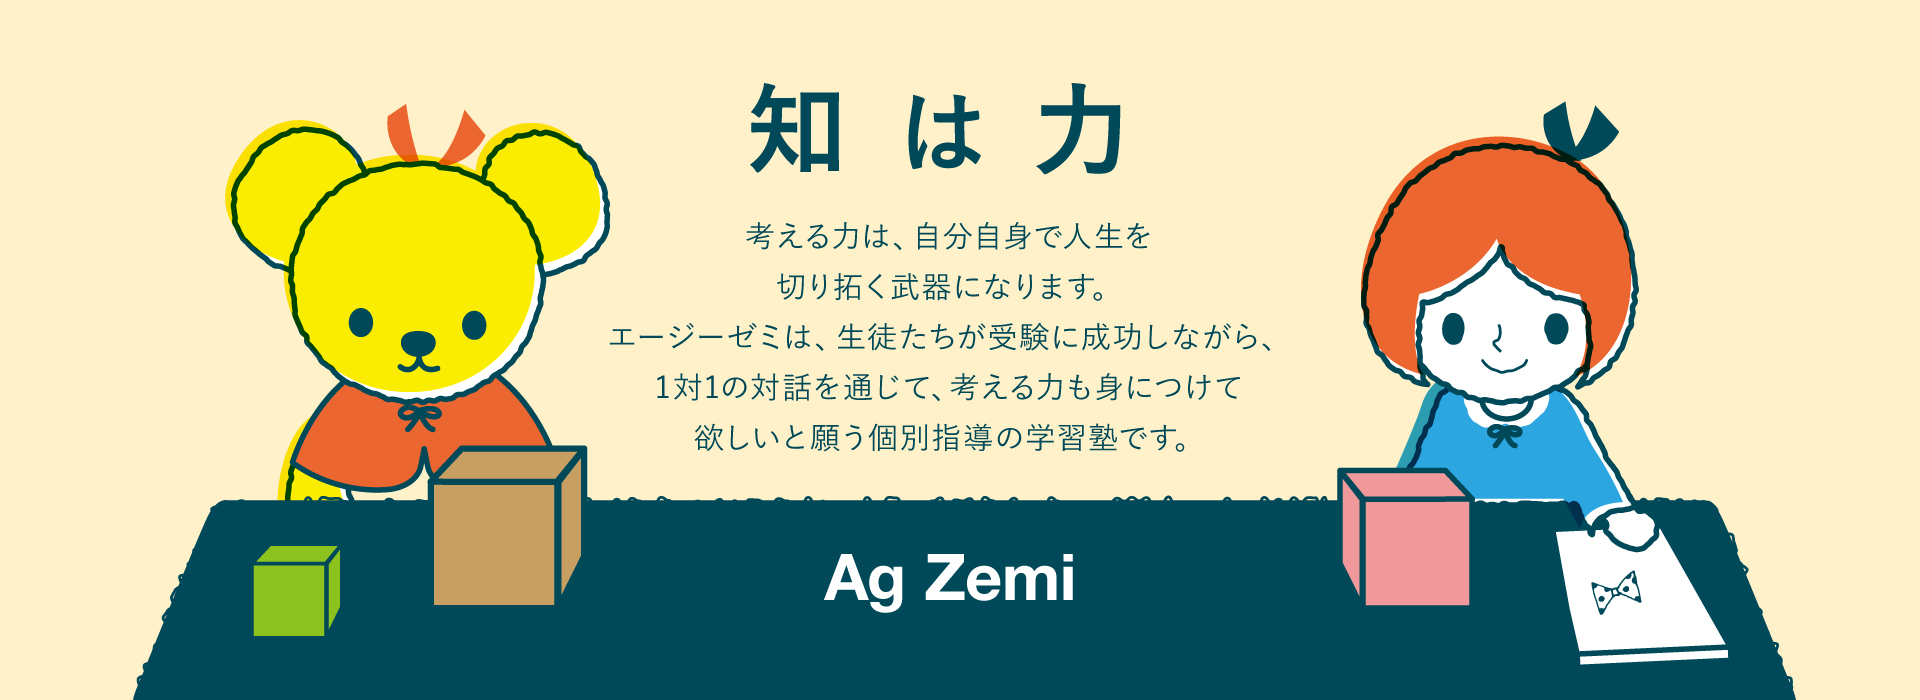 知は力　〜Ag Zemi〜